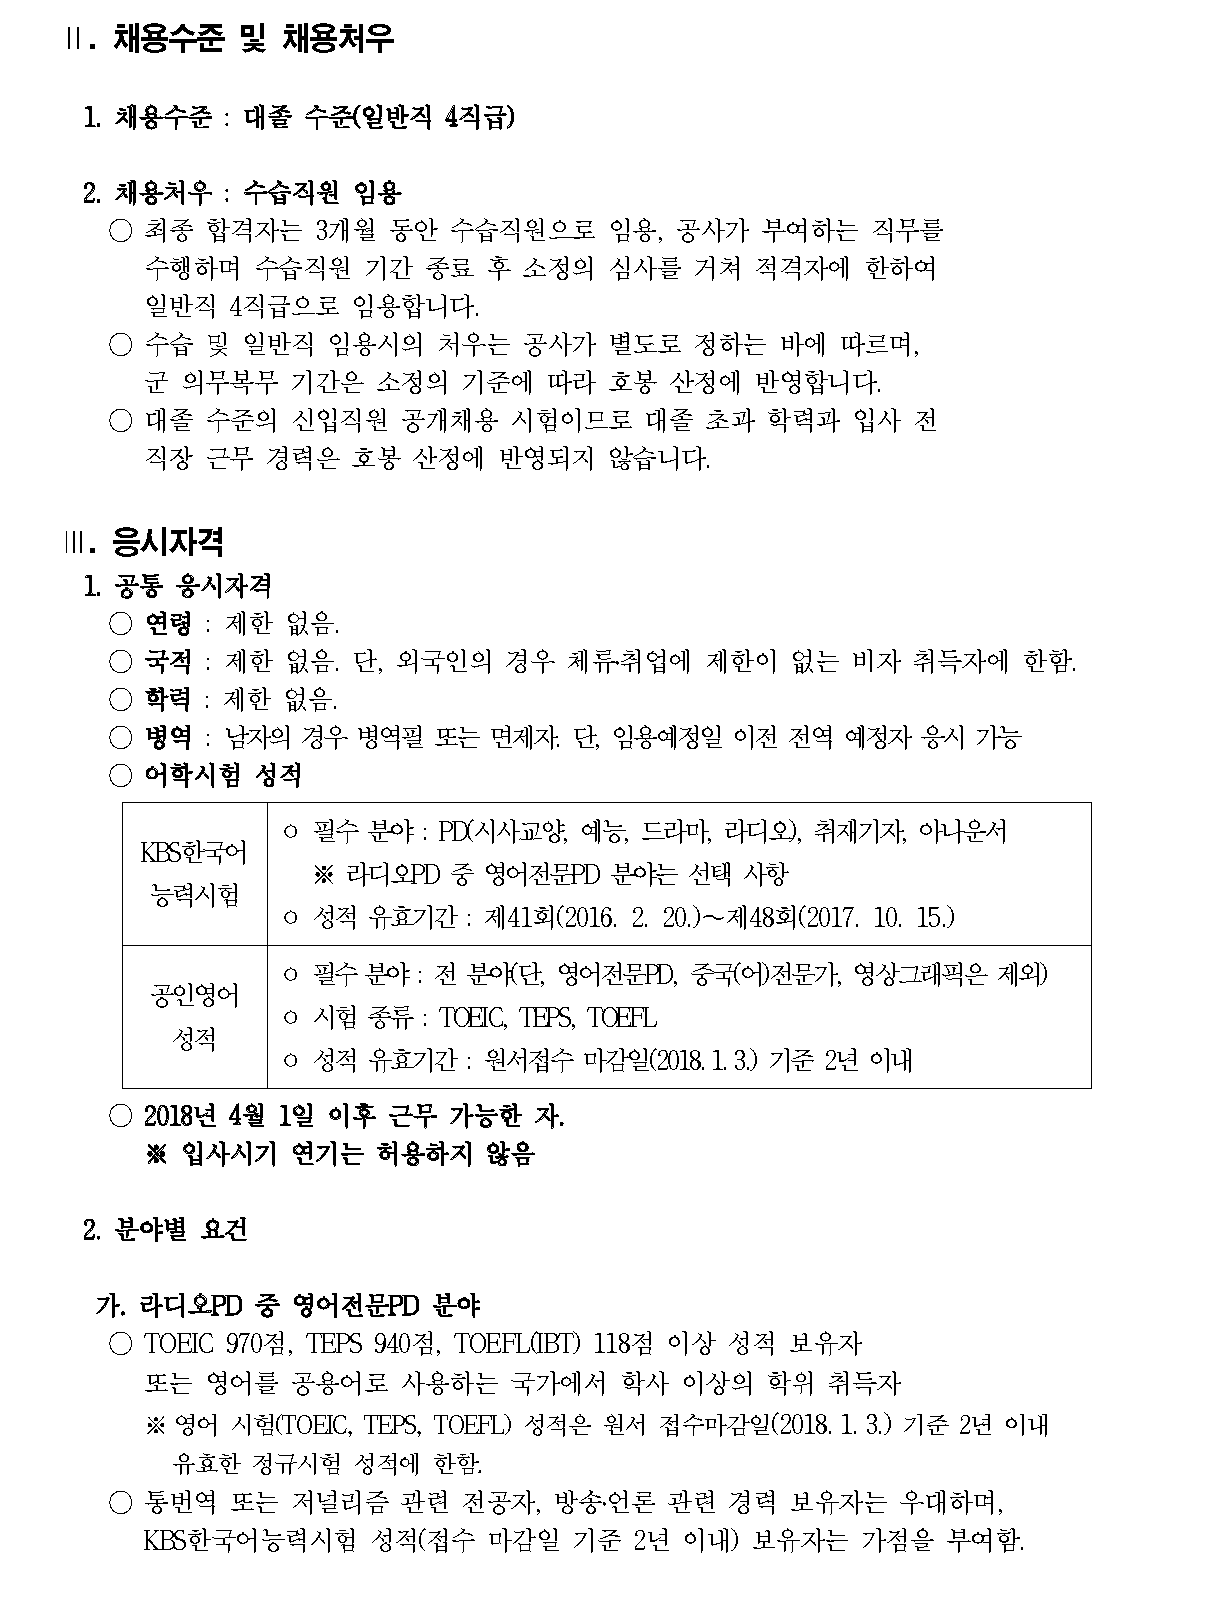 1. 2017년 신입 정기공채 공모요강_페이지_2.png